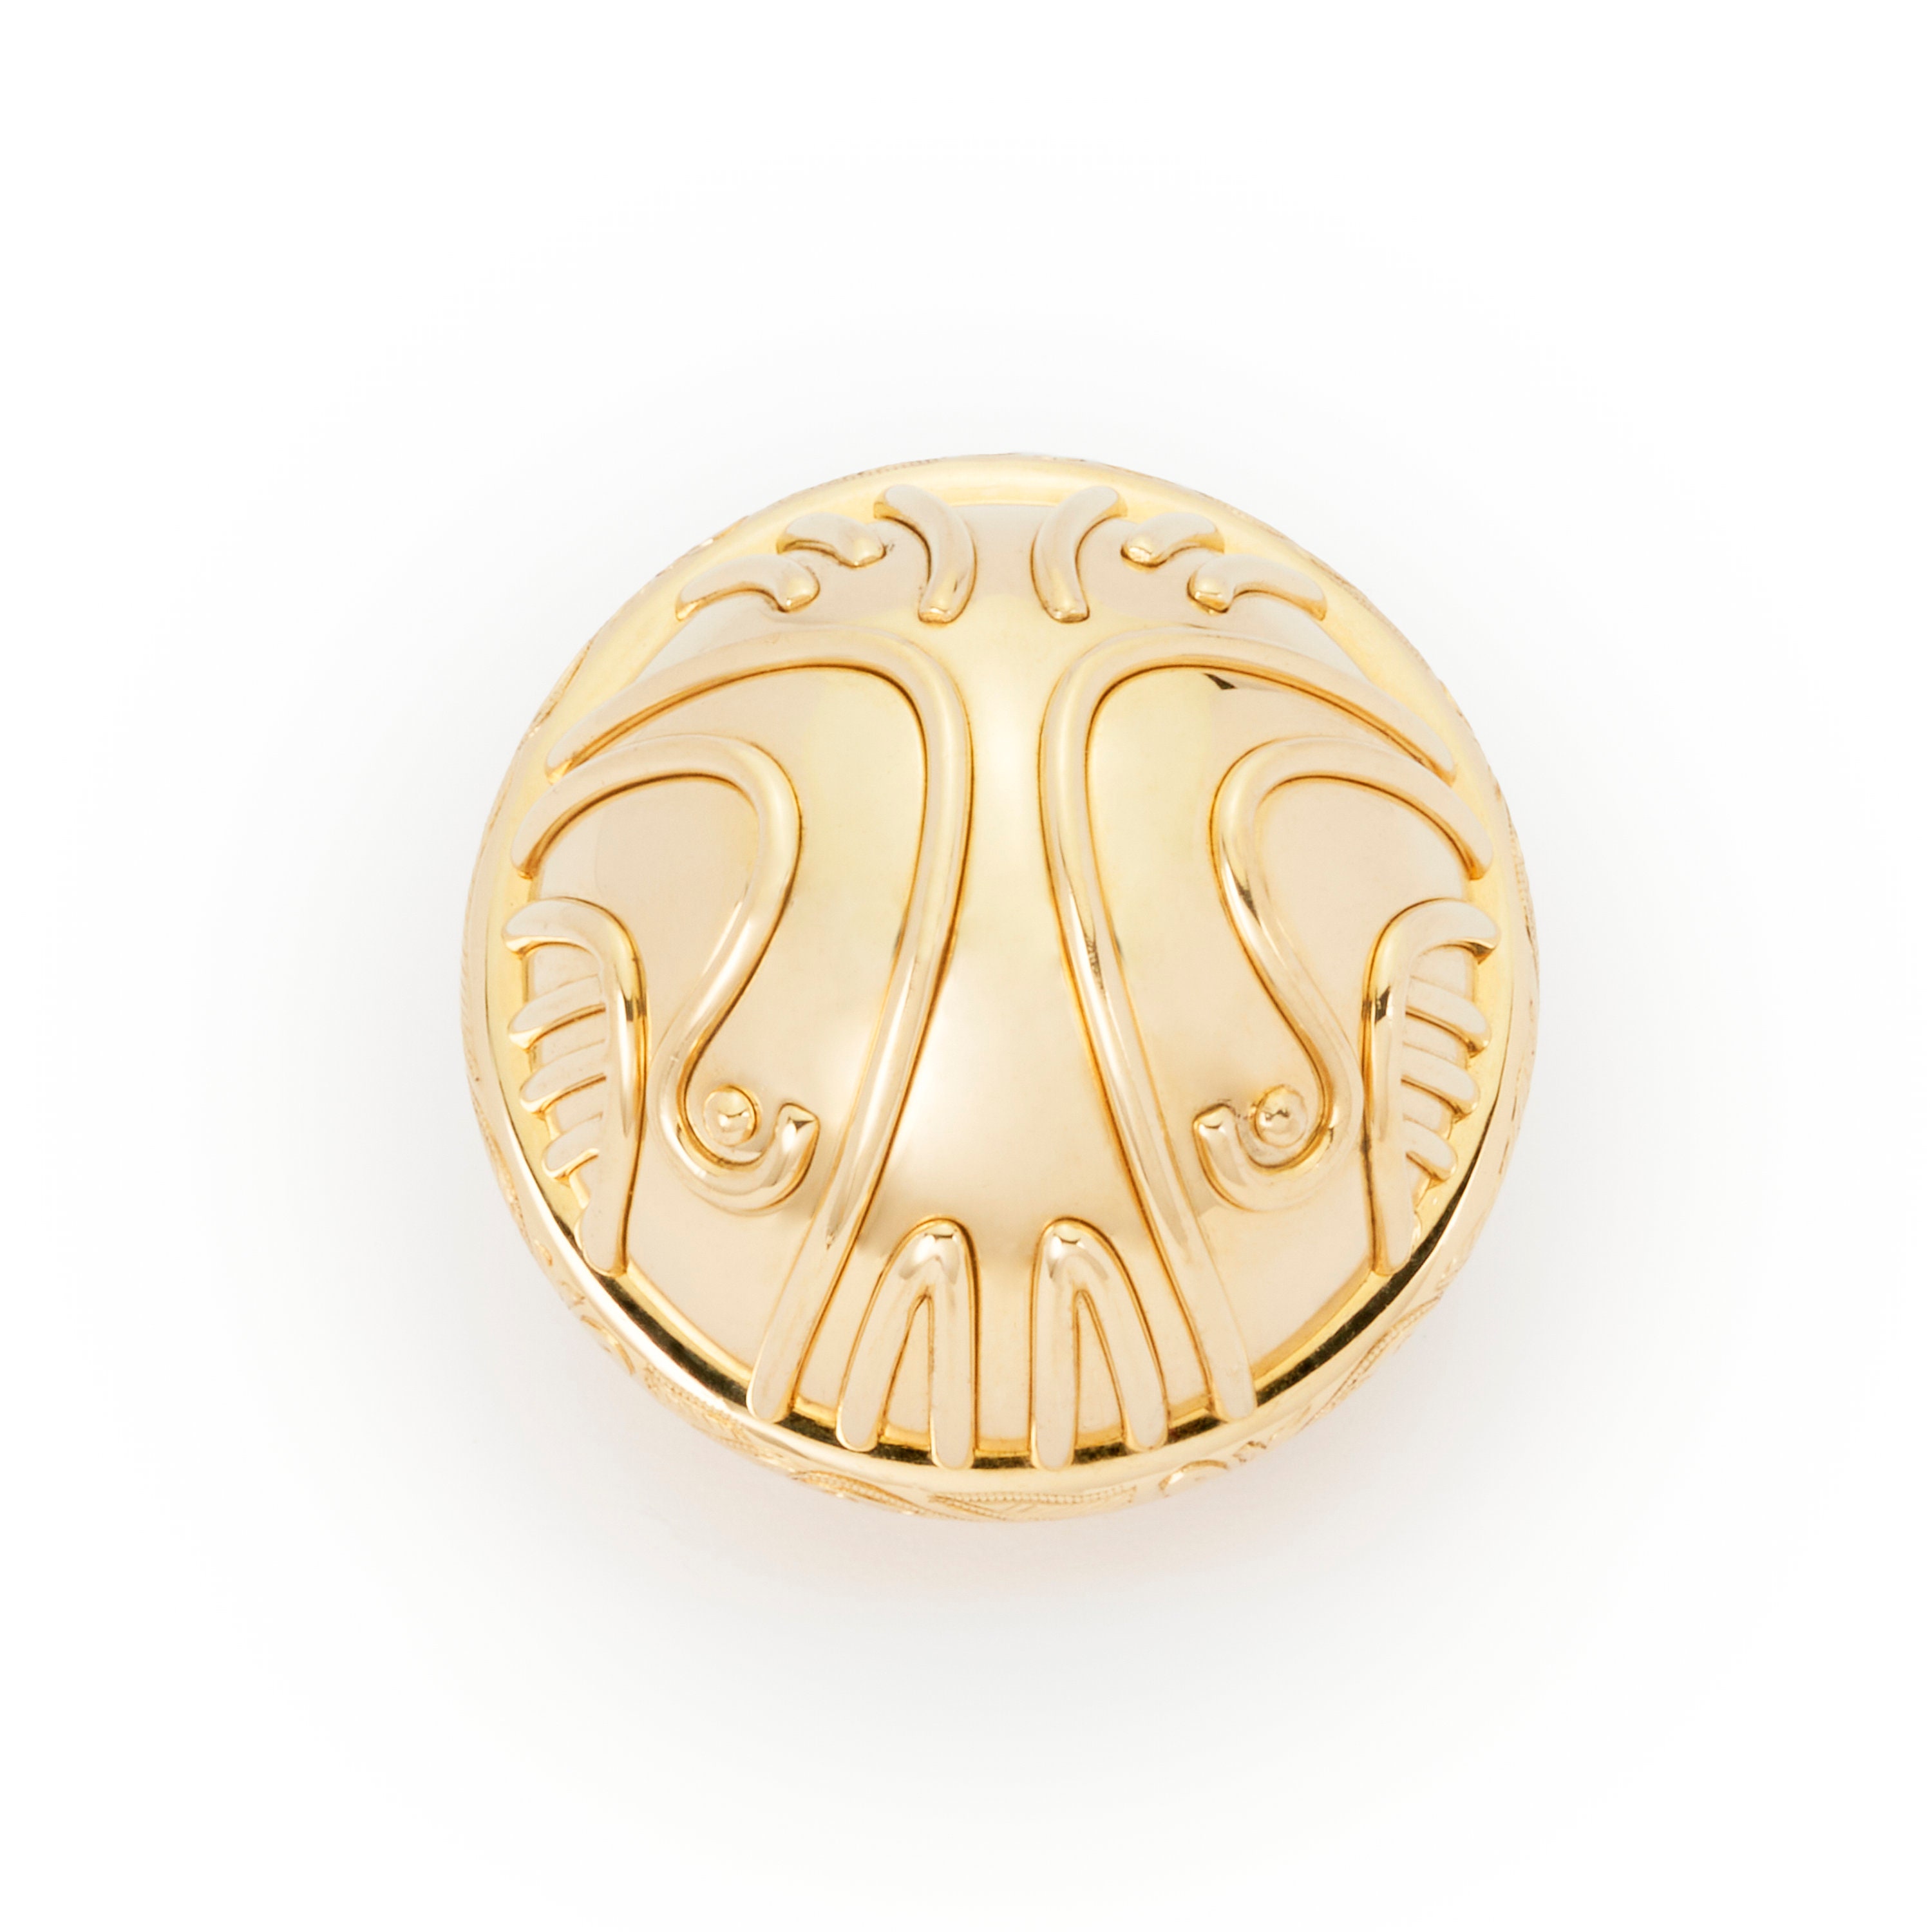 Offiziell lizenzierte Sterling Silber Harry Potter ™ Goldener Schnatz Ring  Box Display Version von Freeman Jewelry -  Österreich